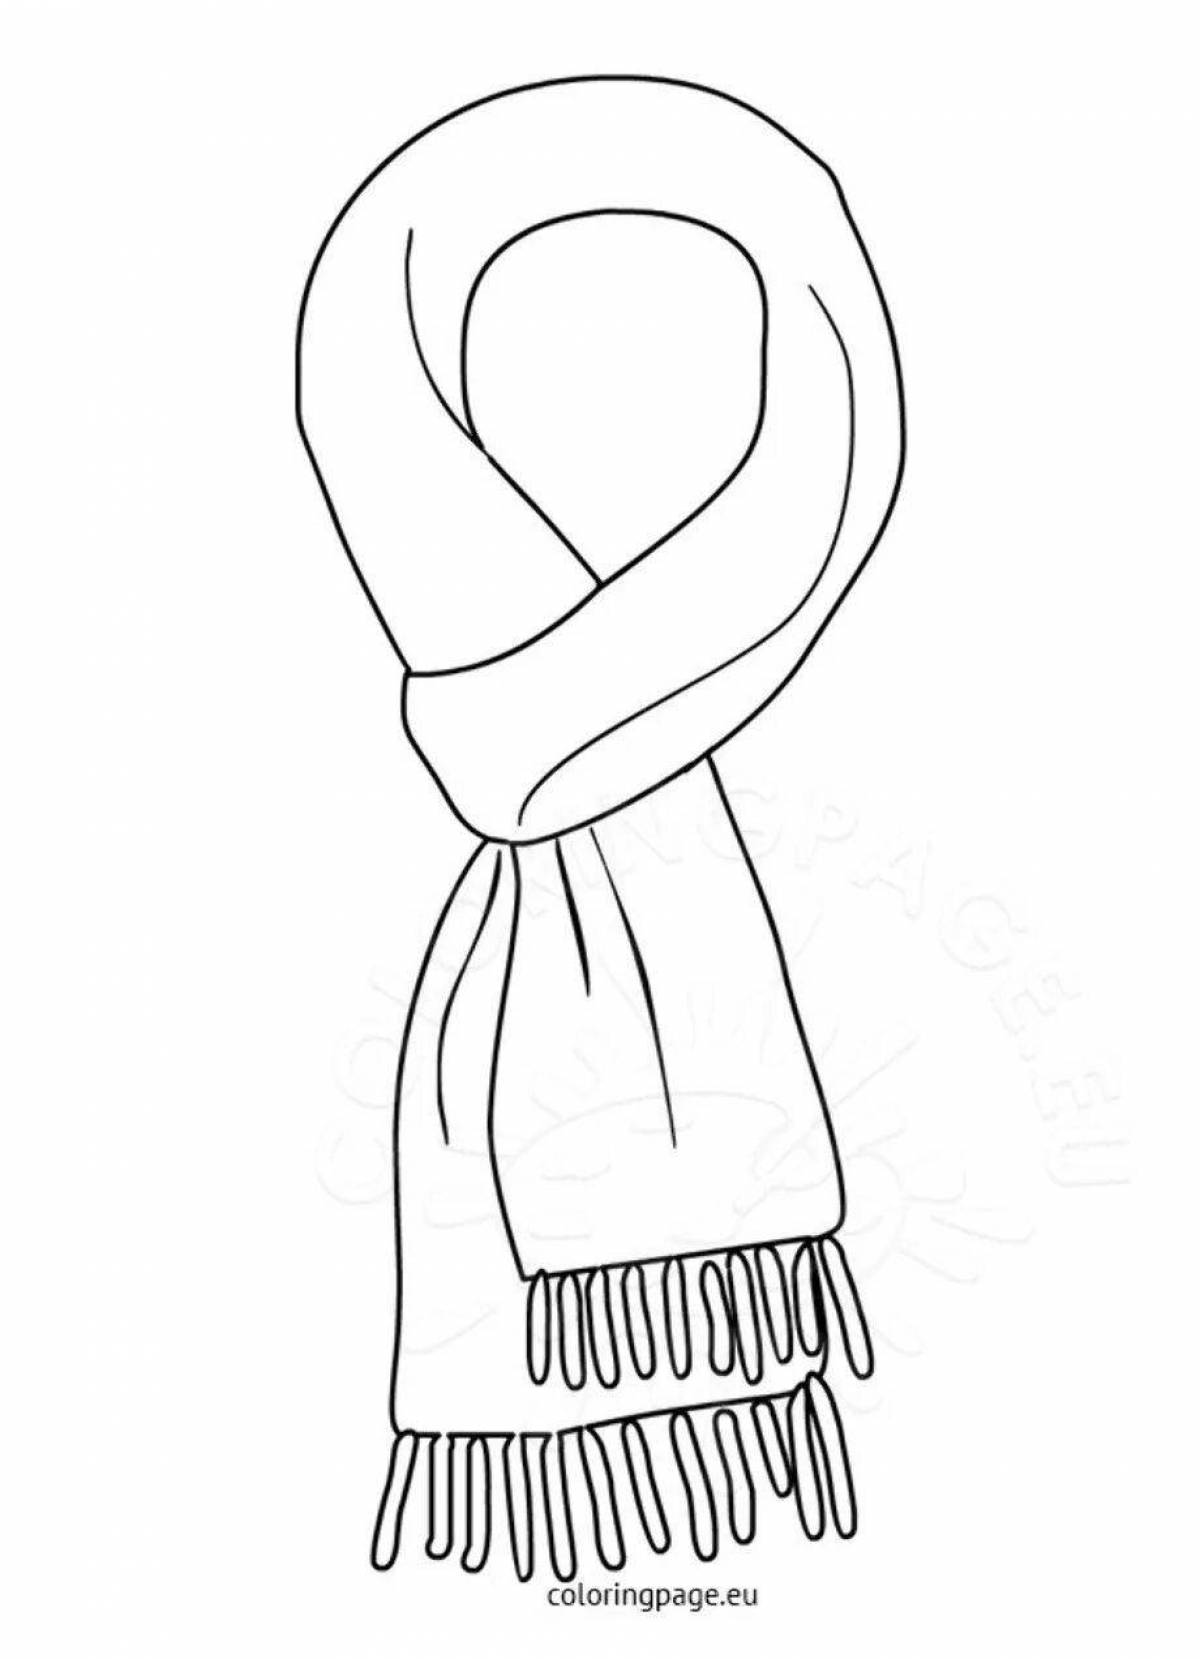 Забавный шарф-раскраска для детей 3-4 лет